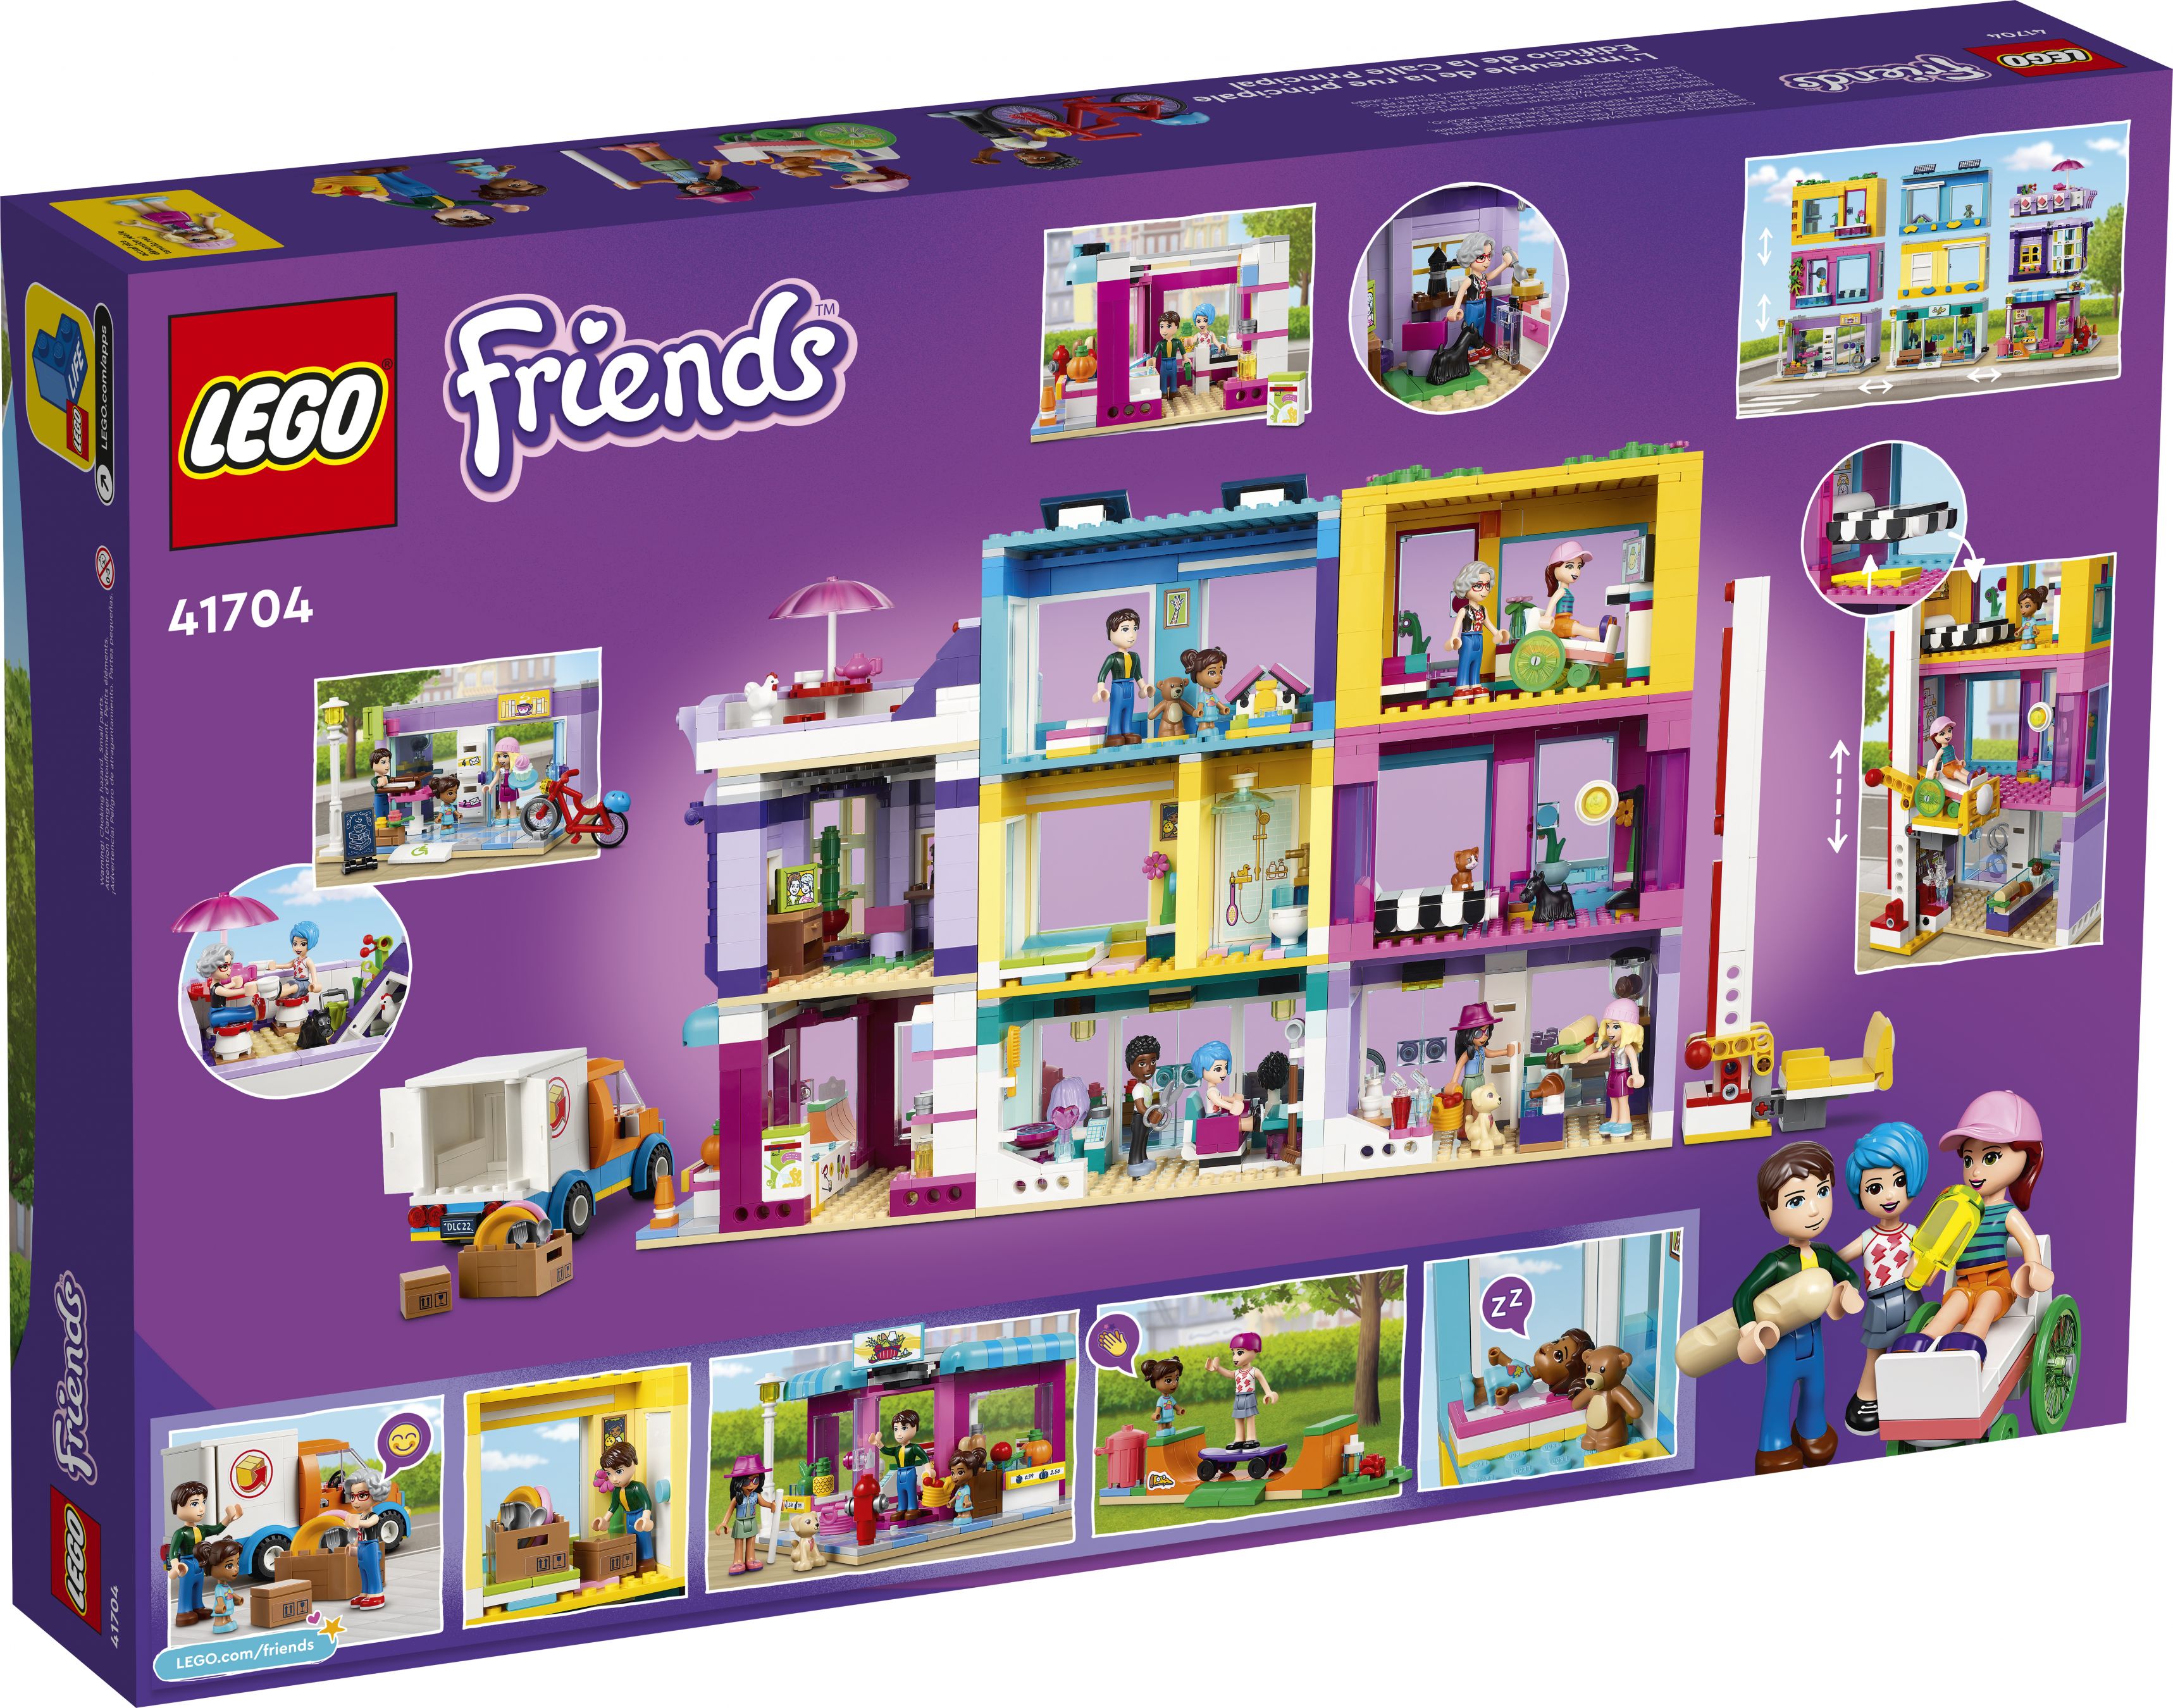 LEGO Friends 41704 Wohnblock LEGO_41704_Box5_v39.jpg